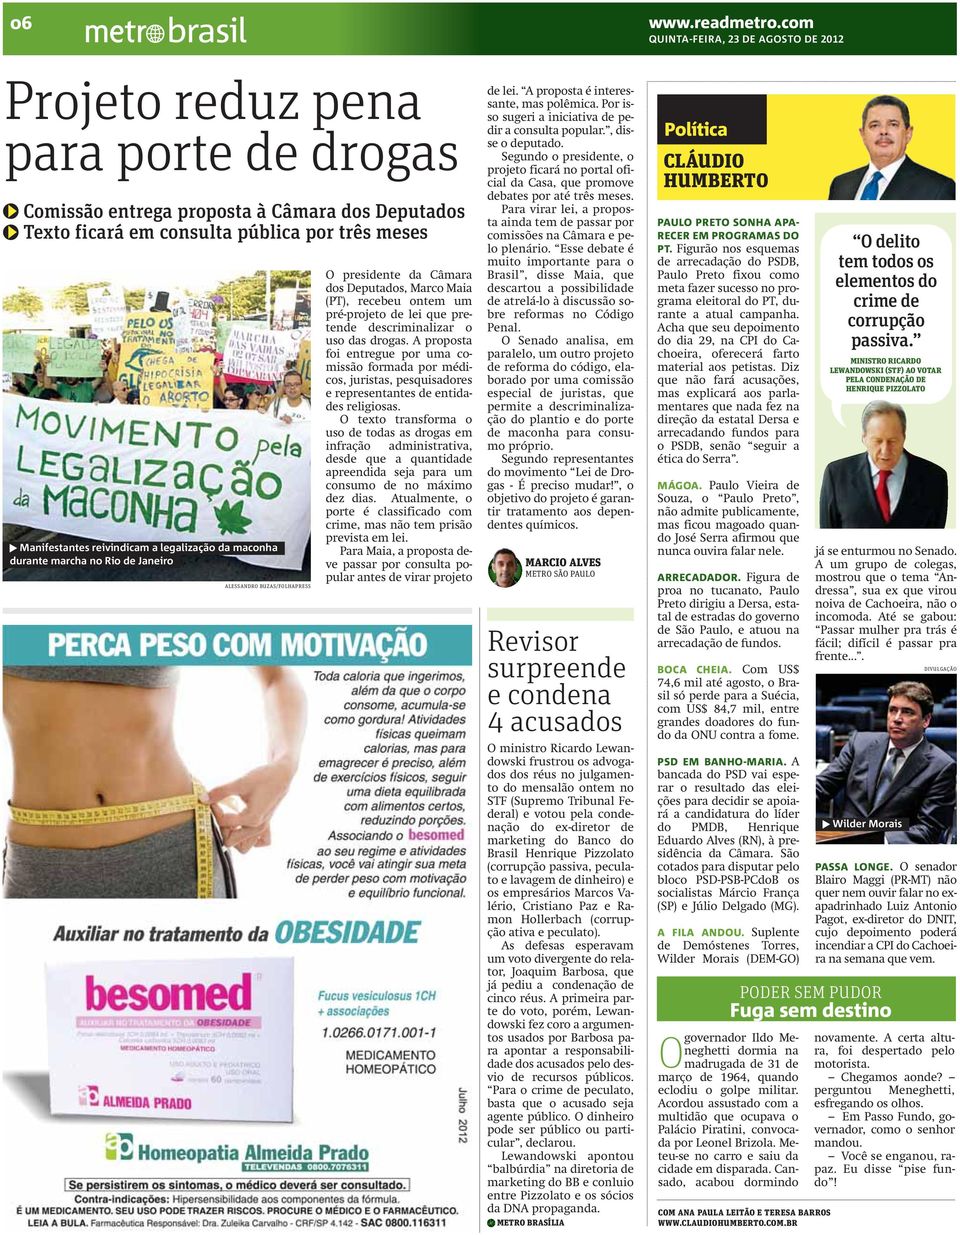 marcha no Rio de Janeiro ALESSANDRO BUZAS/FOLHAPRESS O presidente da Câmara dos Deputados, Marco Maia (PT), recebeu ontem um pré-projeto de lei que pretende descriminalizar o uso das drogas.